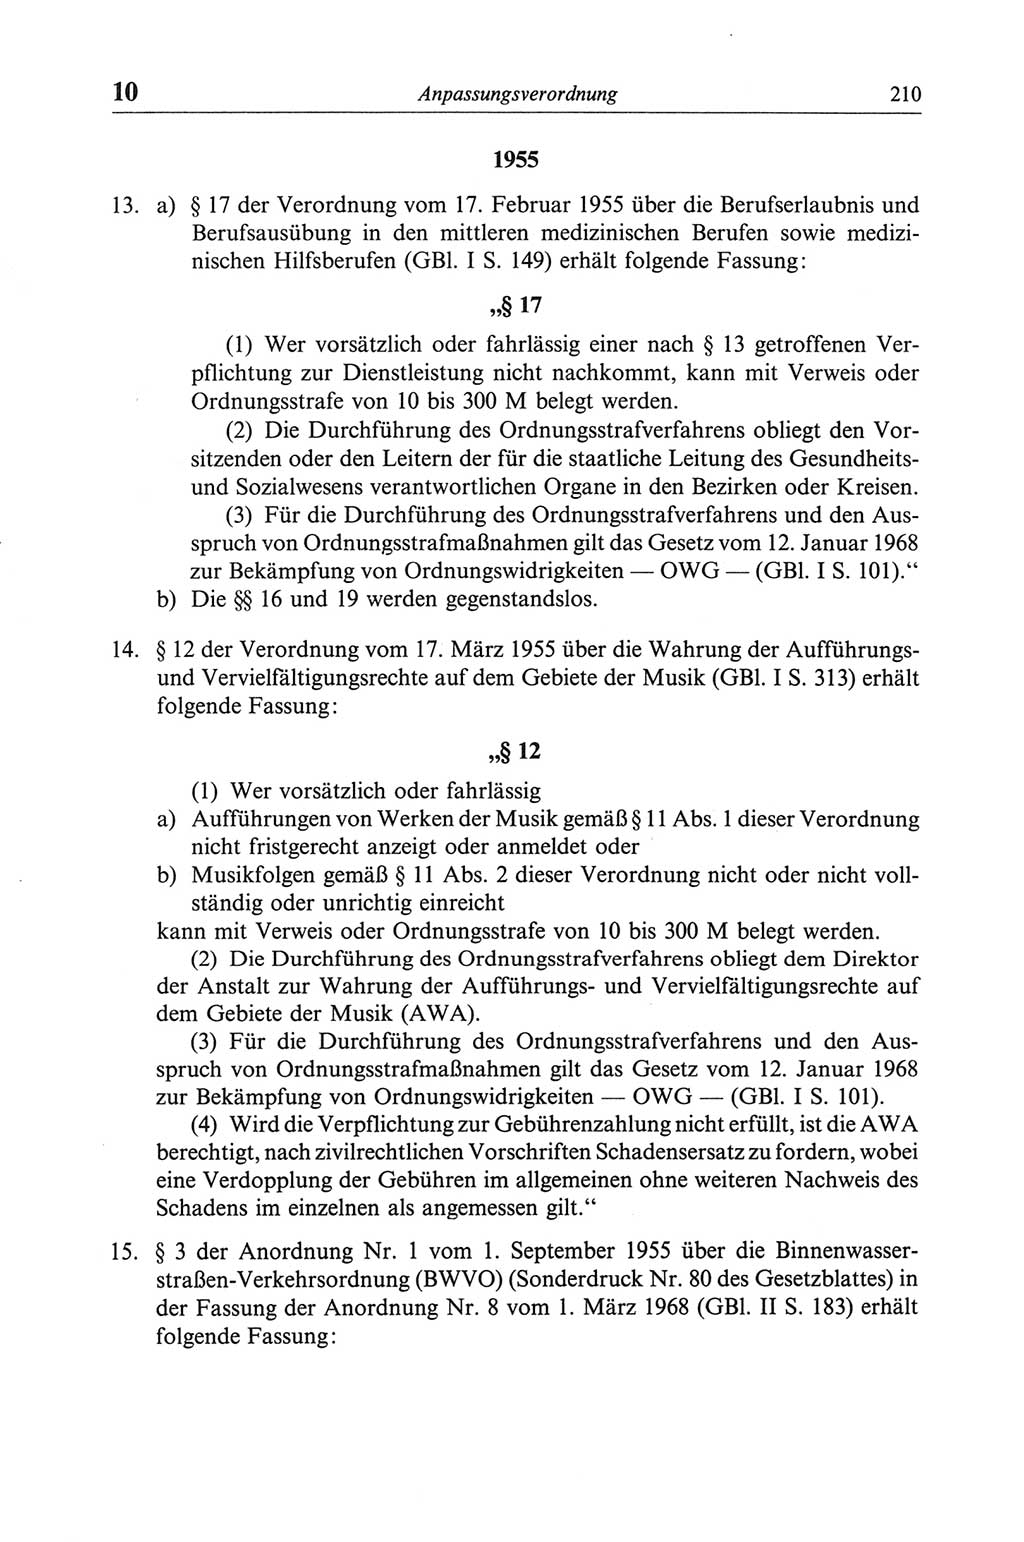 Strafgesetzbuch (StGB) der Deutschen Demokratischen Republik (DDR) und angrenzende Gesetze und Bestimmungen 1968, Seite 210 (StGB Ges. Best. DDR 1968, S. 210)